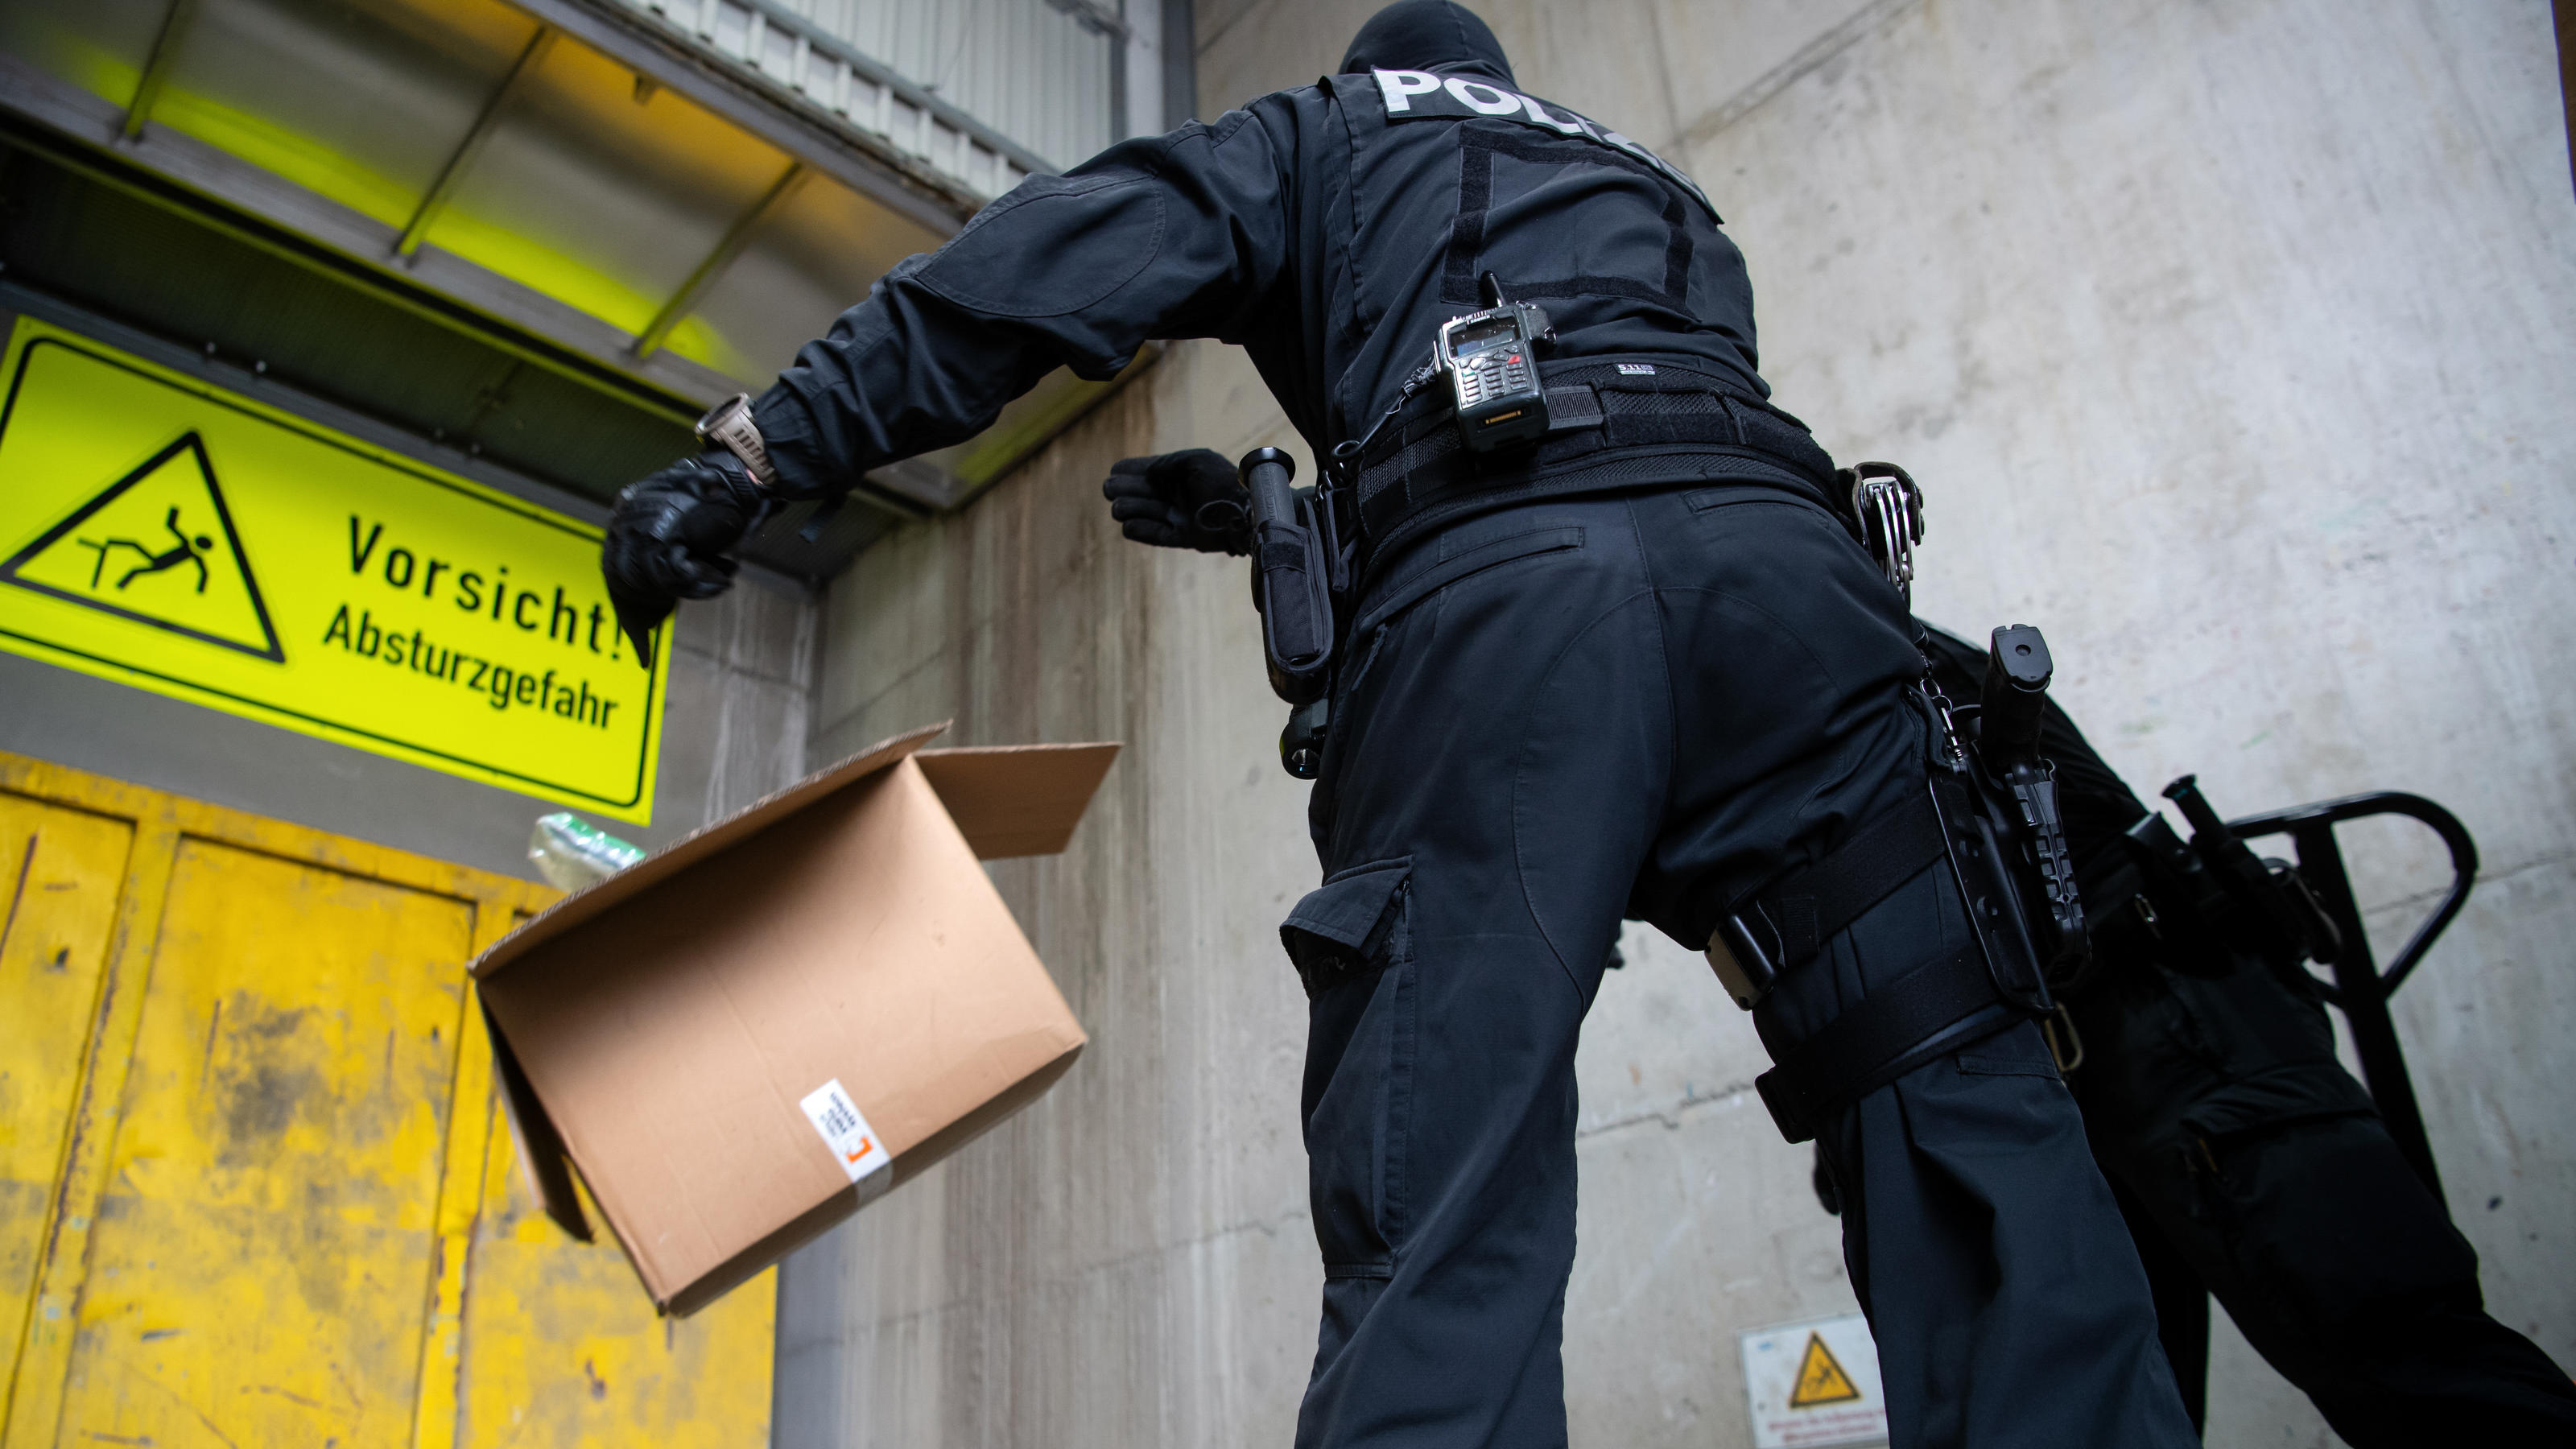 Polizisten werfen Kisten mit Kokain in den Schacht von einer Müllverbrennungsanlage. Im Rahmen der Operation «Schneeschmelze» hat die bayerische Polizei unter strengsten Sicherheitsvorkehrungen das Kokain an einem geheimen Ort in einer Müllverbrennun